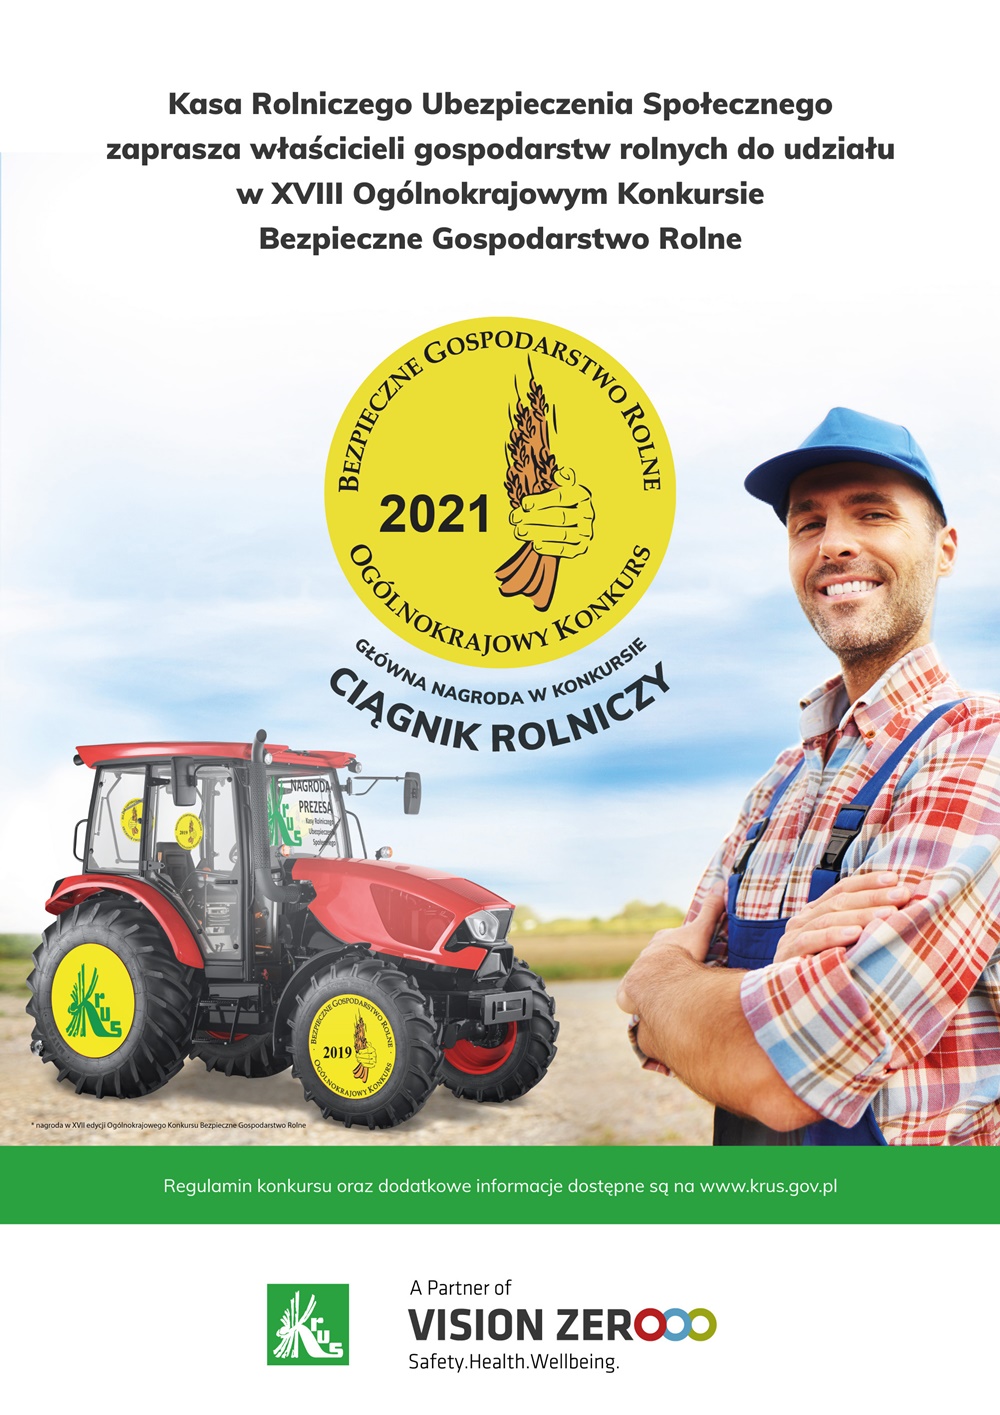 Plakat promujący XVIII edycję Ogólnokrajowego Konkursu „Bezpieczne Gospodarstwo Rolne”